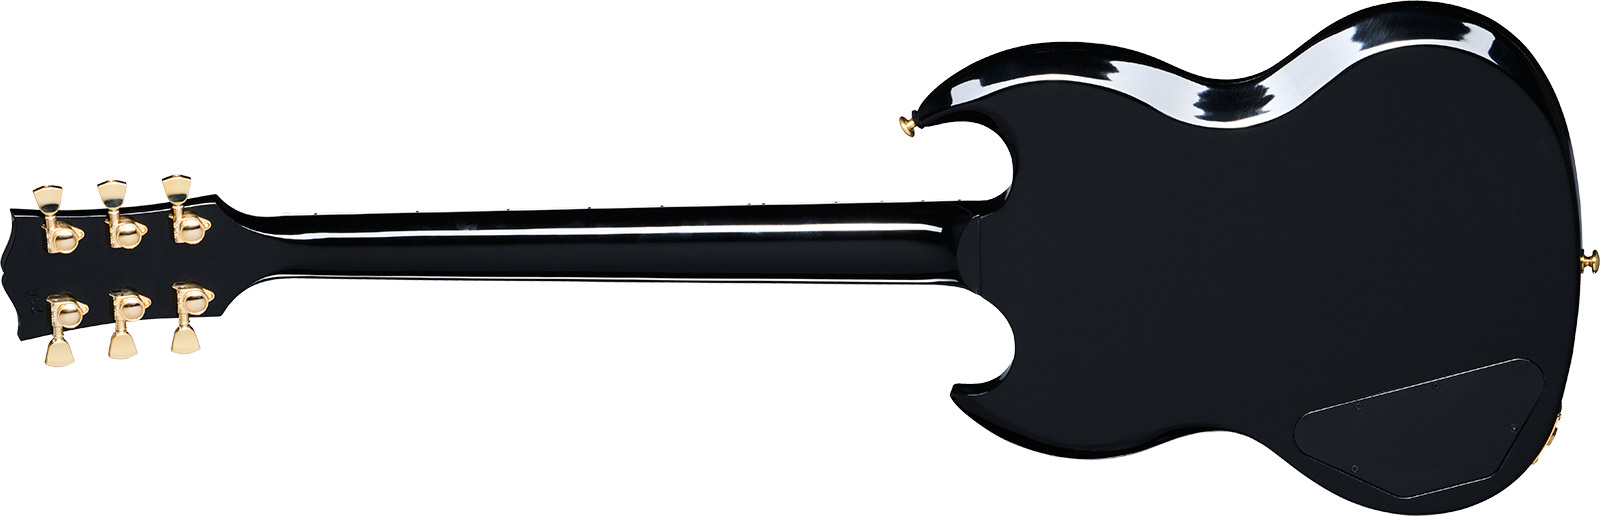 Gibson Sg Supreme Usa 2h Ht Rw - Translucent Ebony Burst - Guitare Électrique Double Cut - Variation 1